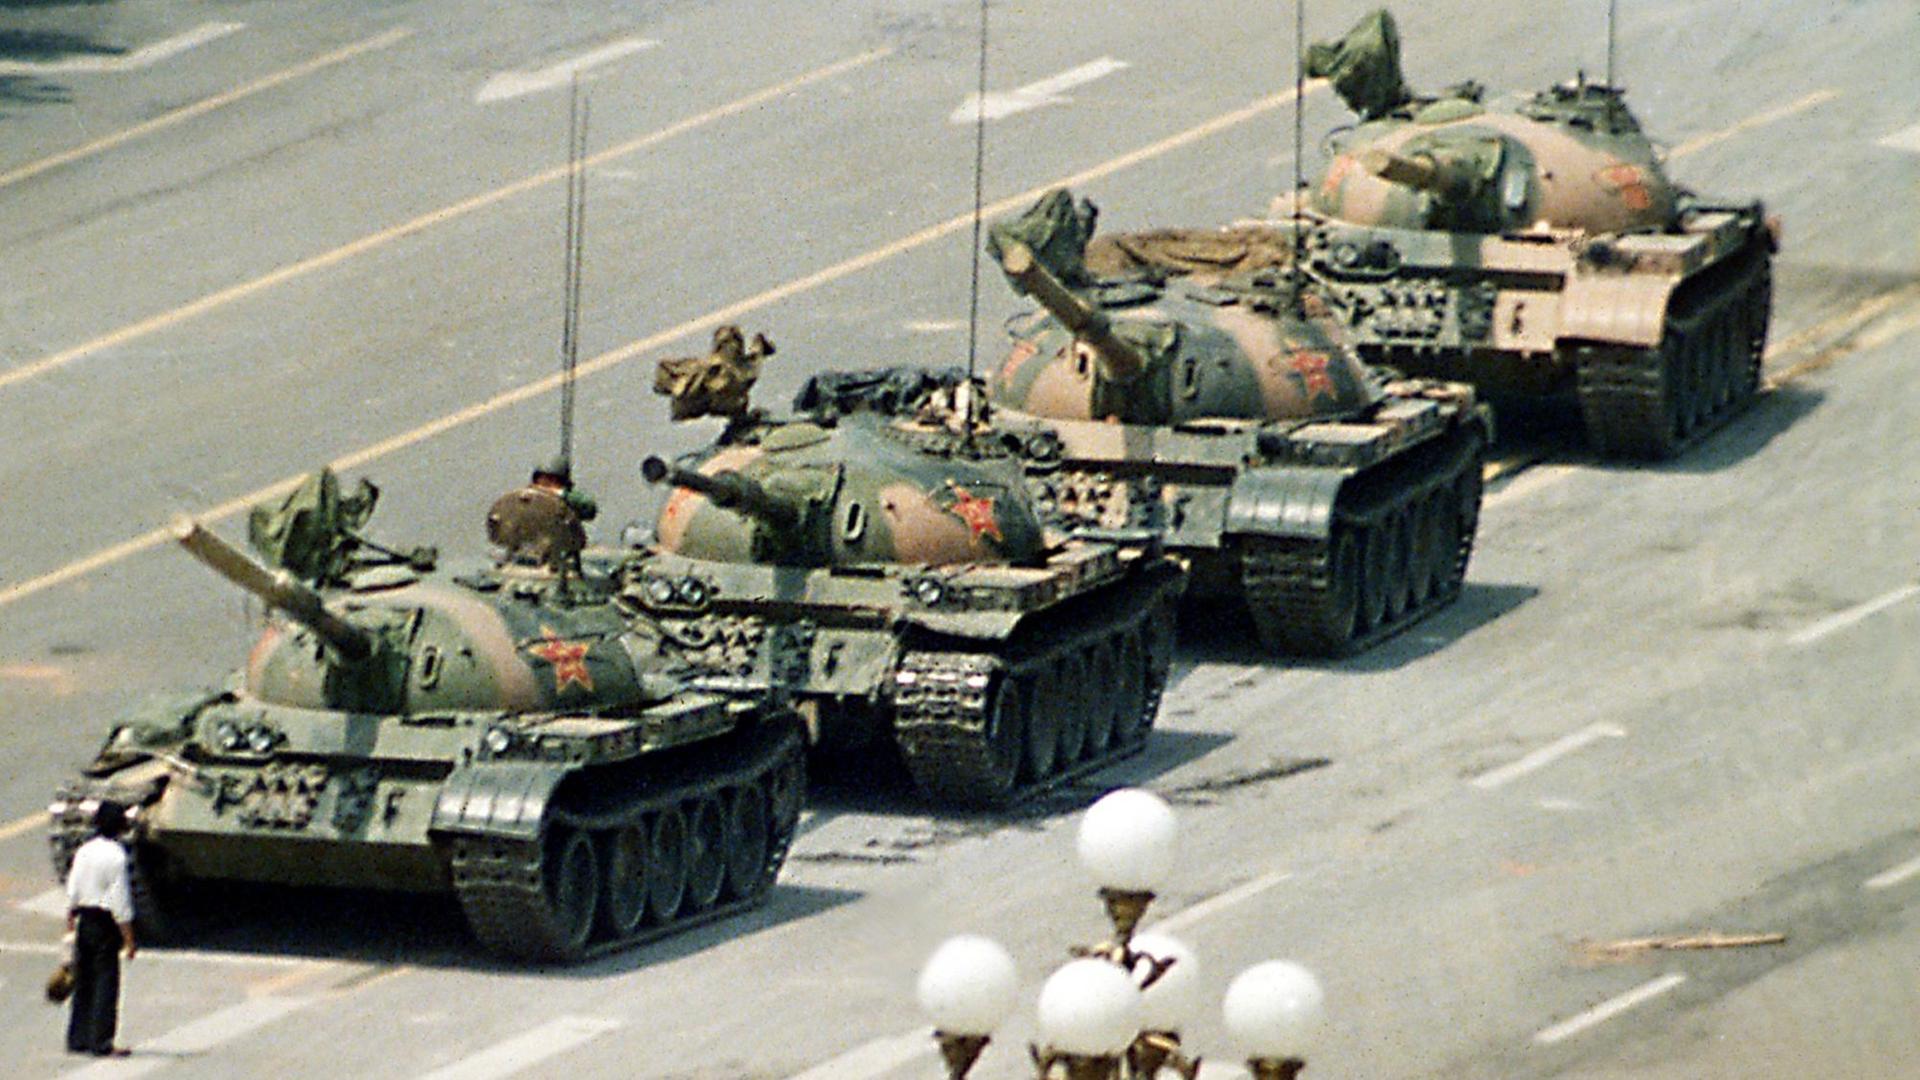 Am 5. Juni 1989 stellt sich ein Mann weinend vor die Panzer auf dem Tiananmen Platz in Peking. Er fleht darum, dass das Töten in Chinas Hauptstadt ein Ende nimmt. Außenstehende zogen ihn weg bevor die Panzer auf dem Cangan Boulevard am Beijing Hotel weiterrollen.